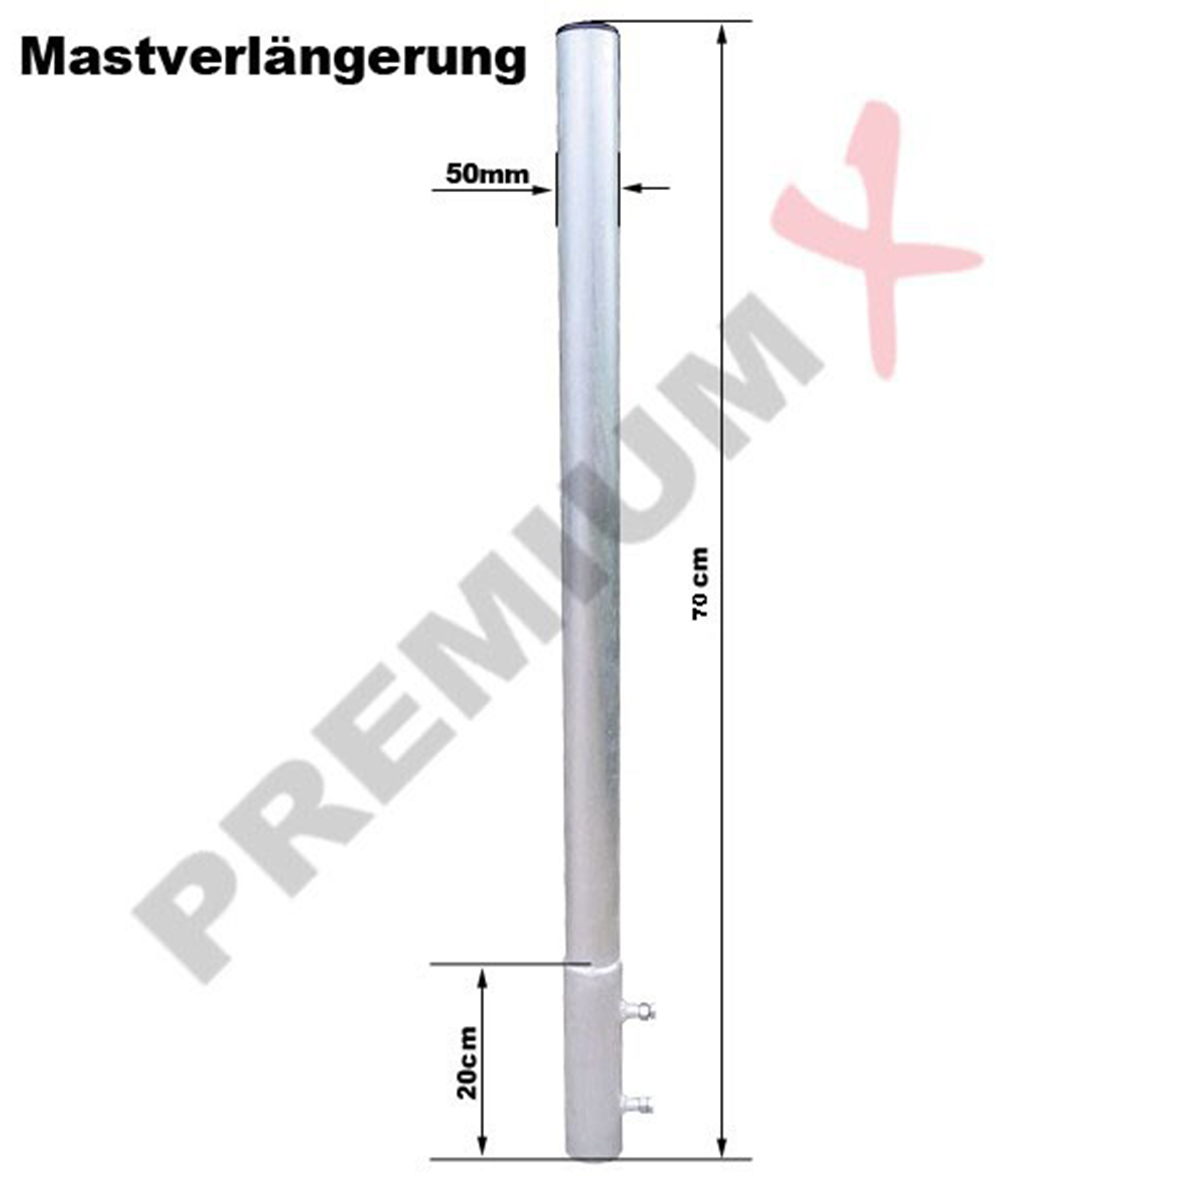 70cm PREMIUMX Aluminium Silber Ø Mastverlängerung Mastaufsatz Mastverlängerung, 50mm